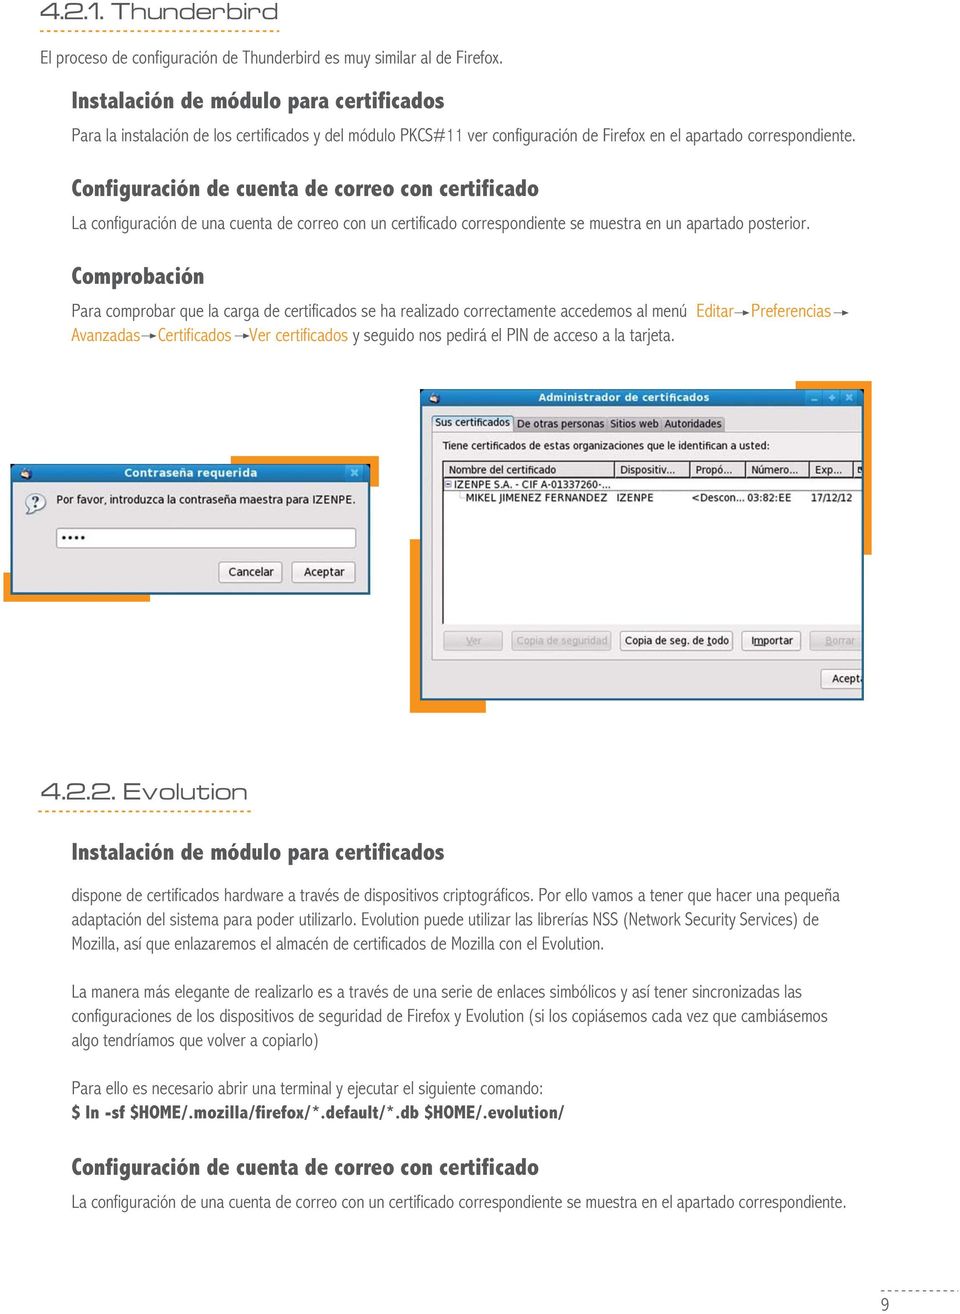 Configuración de cuenta de correo con certificado La configuración de una cuenta de correo con un certificado correspondiente se muestra en un apartado posterior.